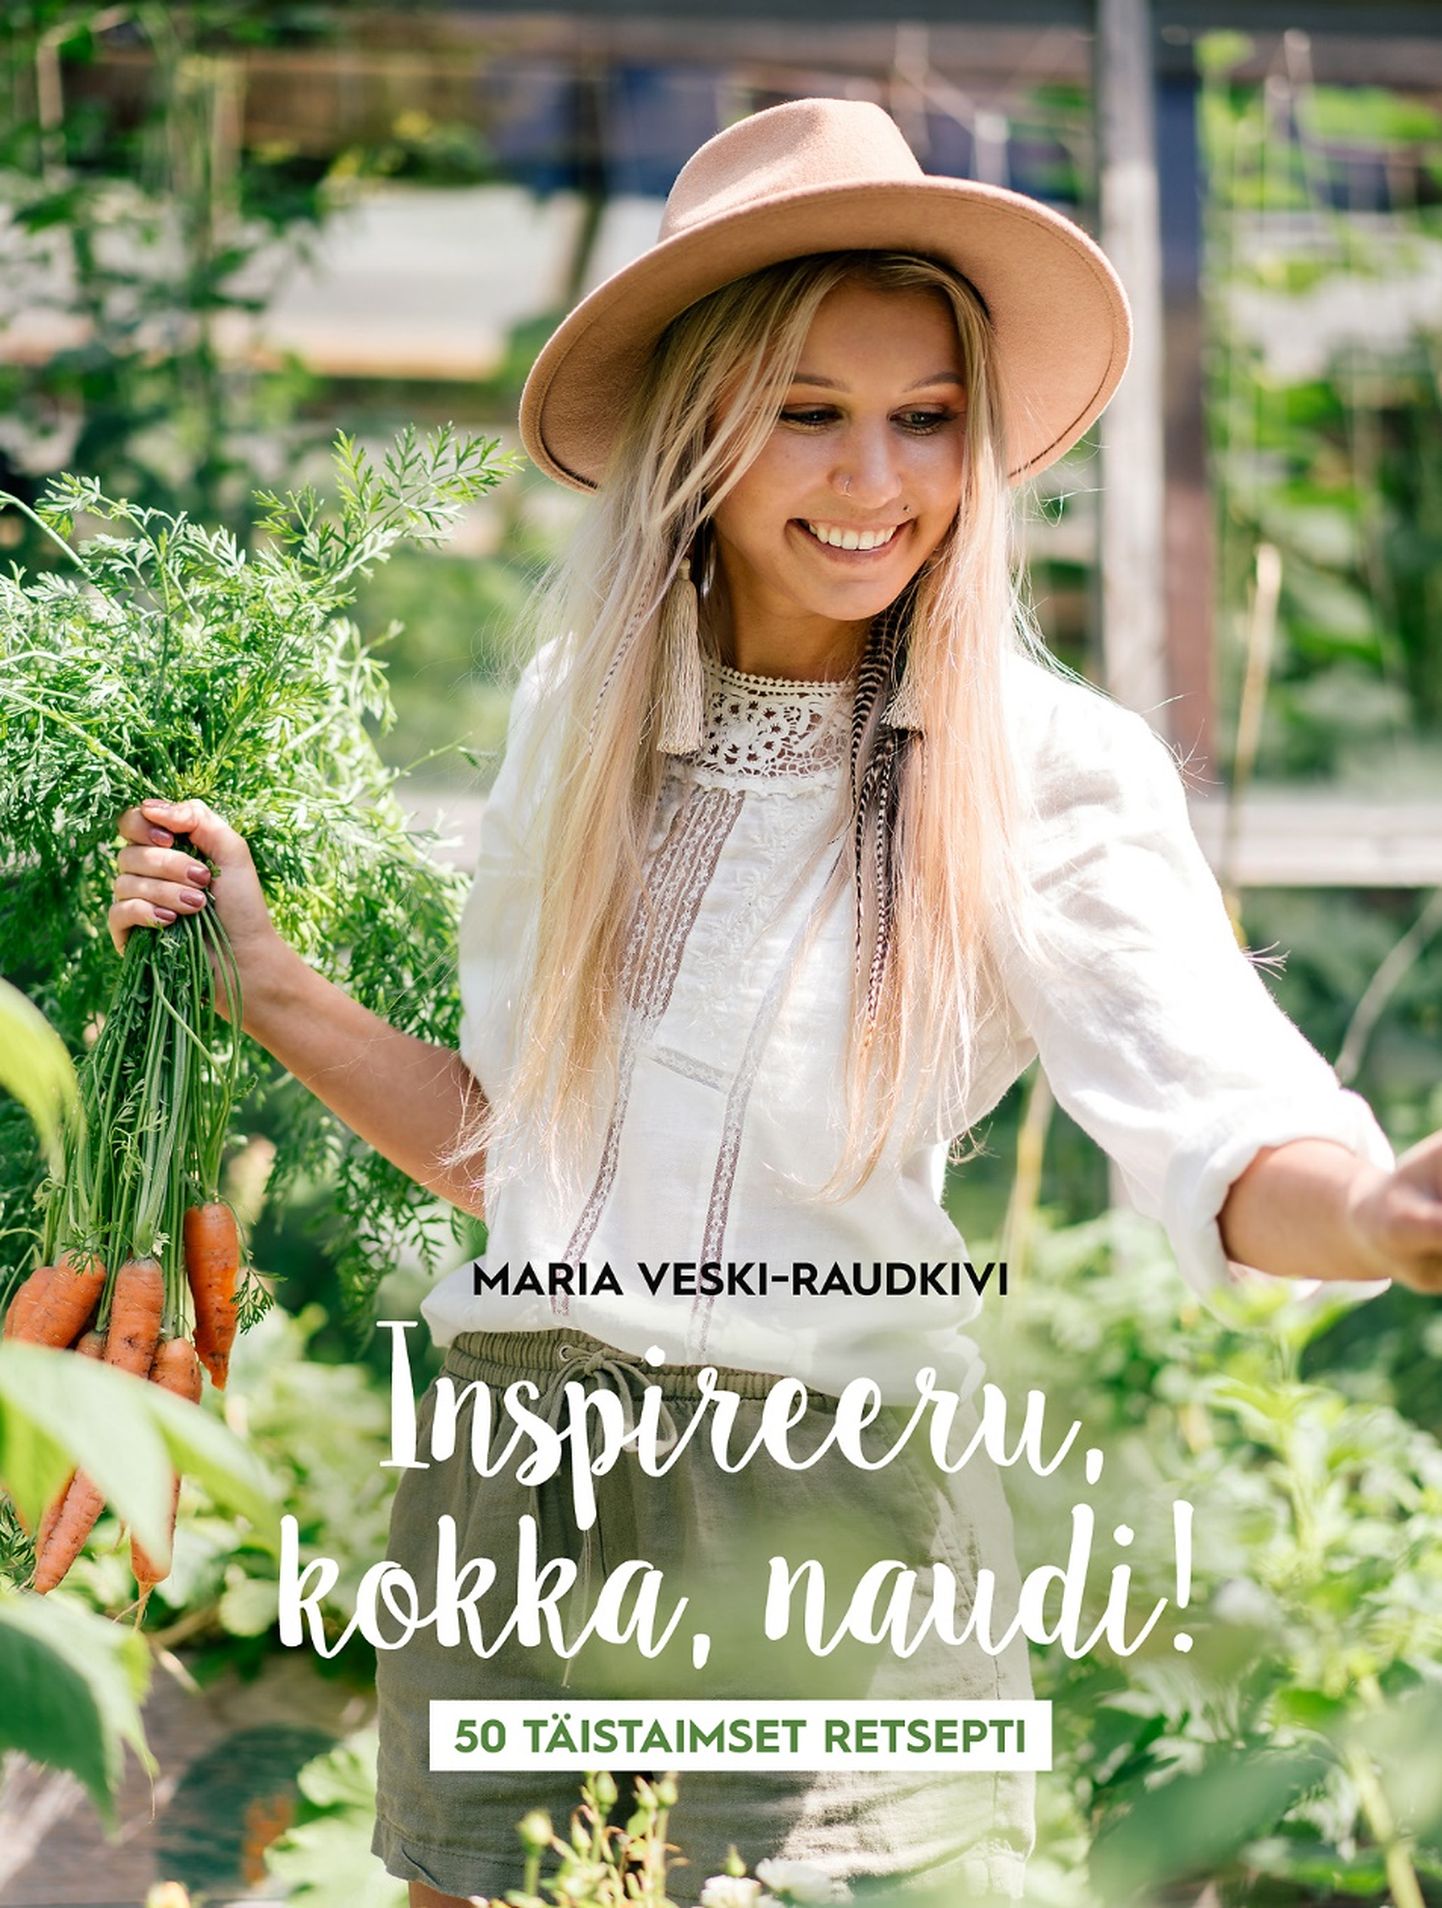 Maria Veski-Raudkiv, «Inspireeru, kokka, naudi! 50 täistaimset retsepti».